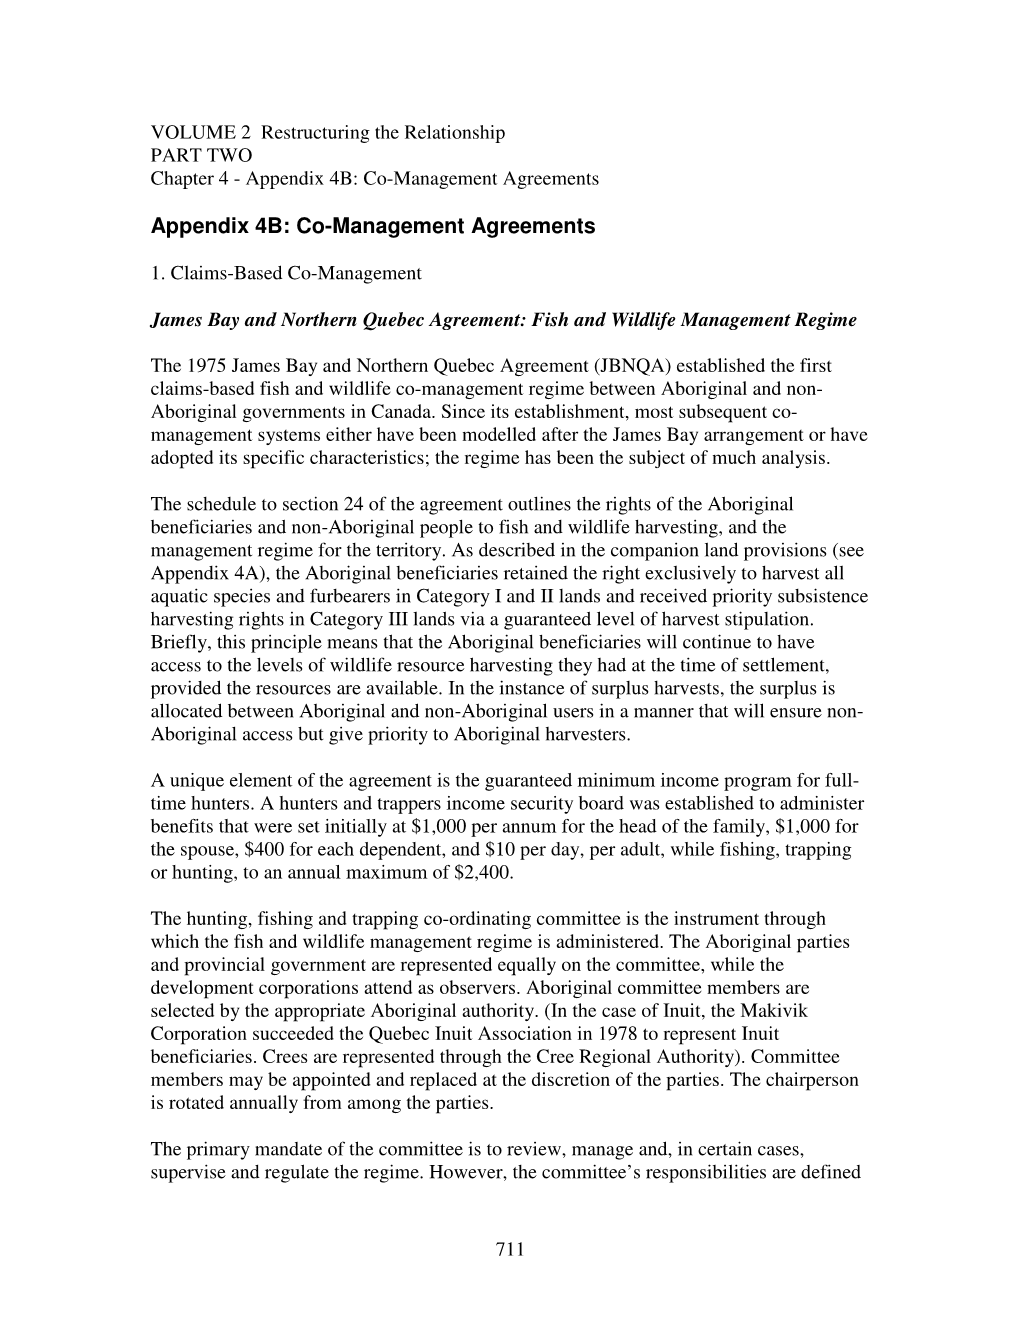 Appendix 4B: Co-Management Agreements